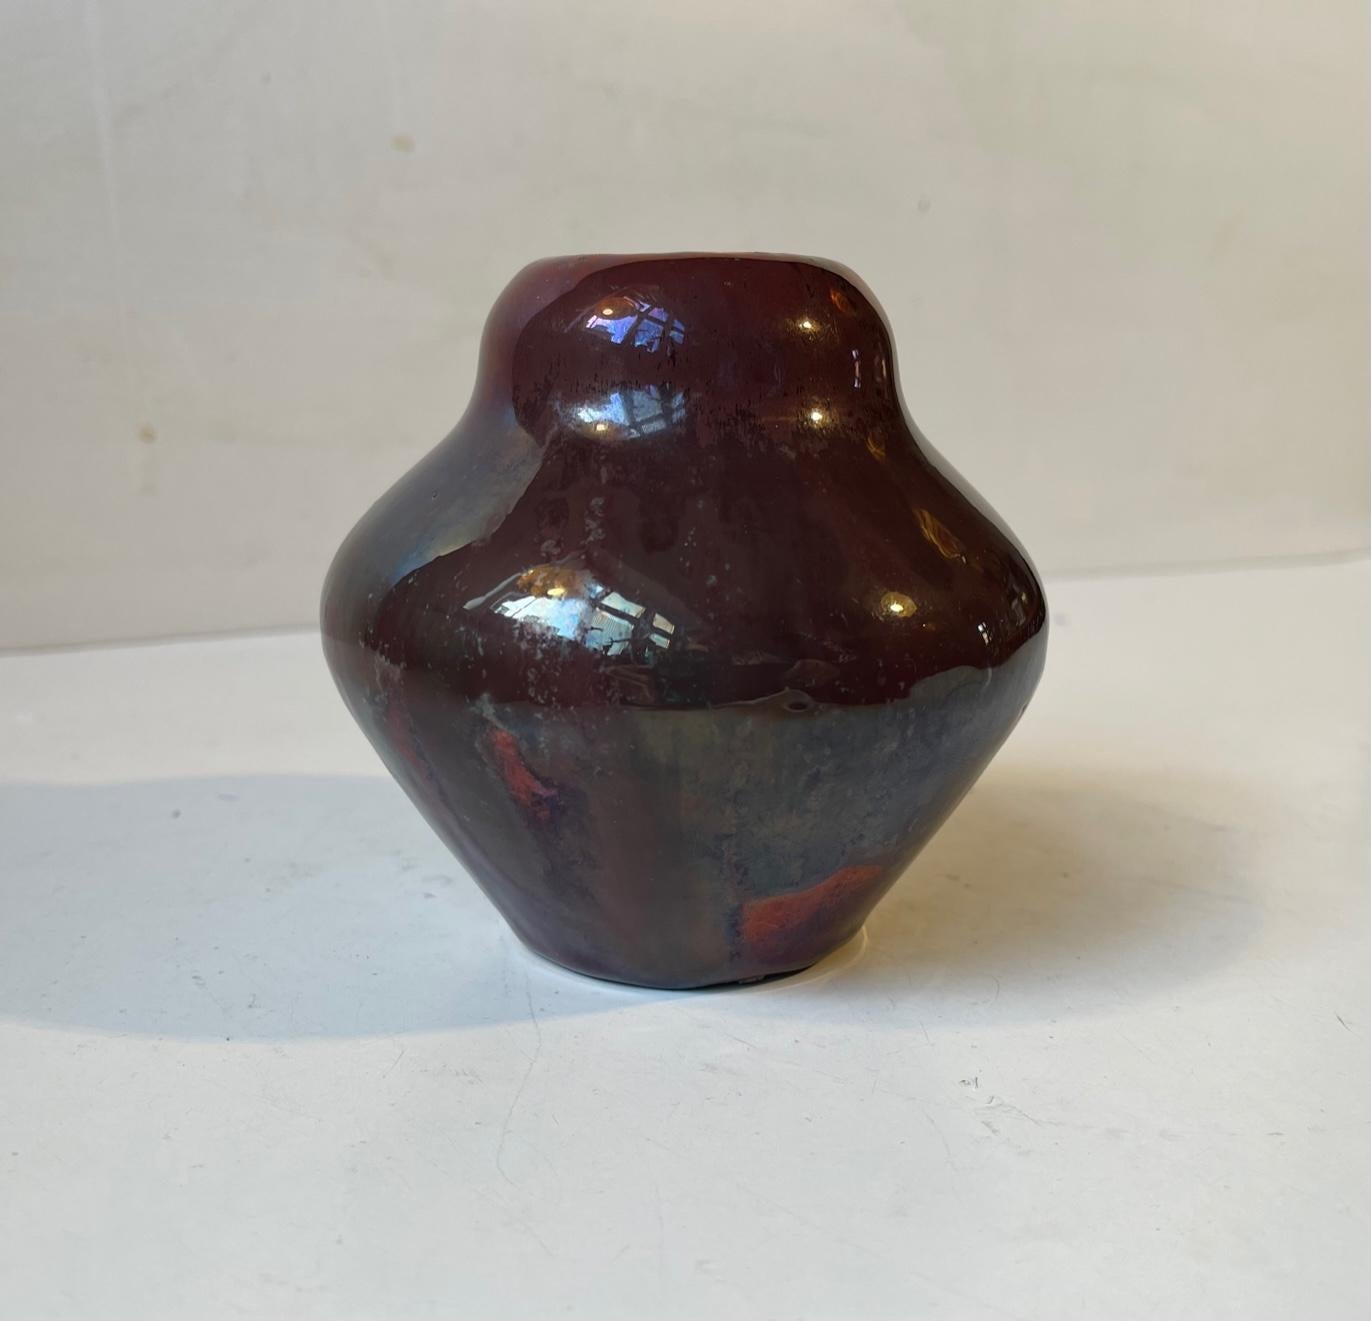 Keramikvase des dänischen Keramikers Soren Kongstrand. Es ist ein Einzelstück und stammt aus der Zeit um 1935. Eksperimentelle Glasur: metallische/kupferbasierte Glanzglasuren, die gebrannt und während des künstlerischen Prozesses mehrmals